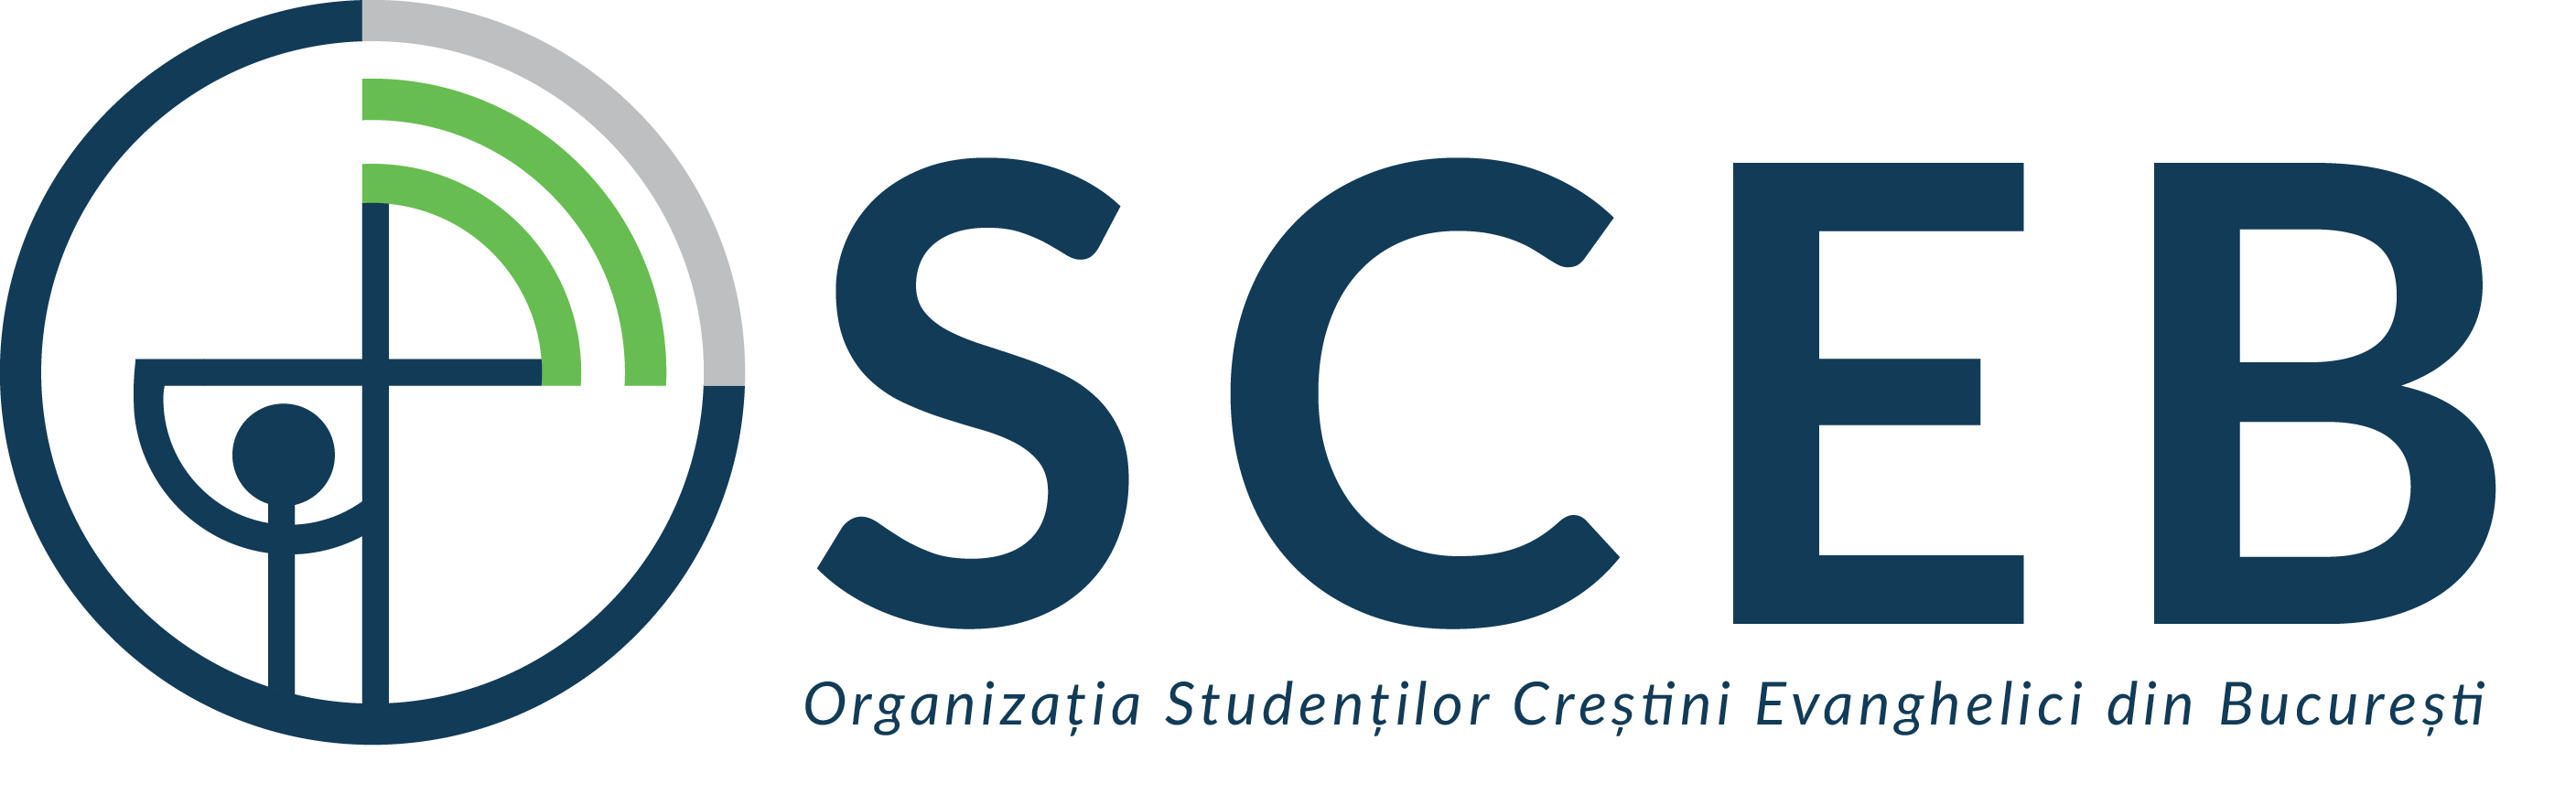 Organizatia Studentilor Crestini Evanghelici din Bucuresti (OSCEB) logo